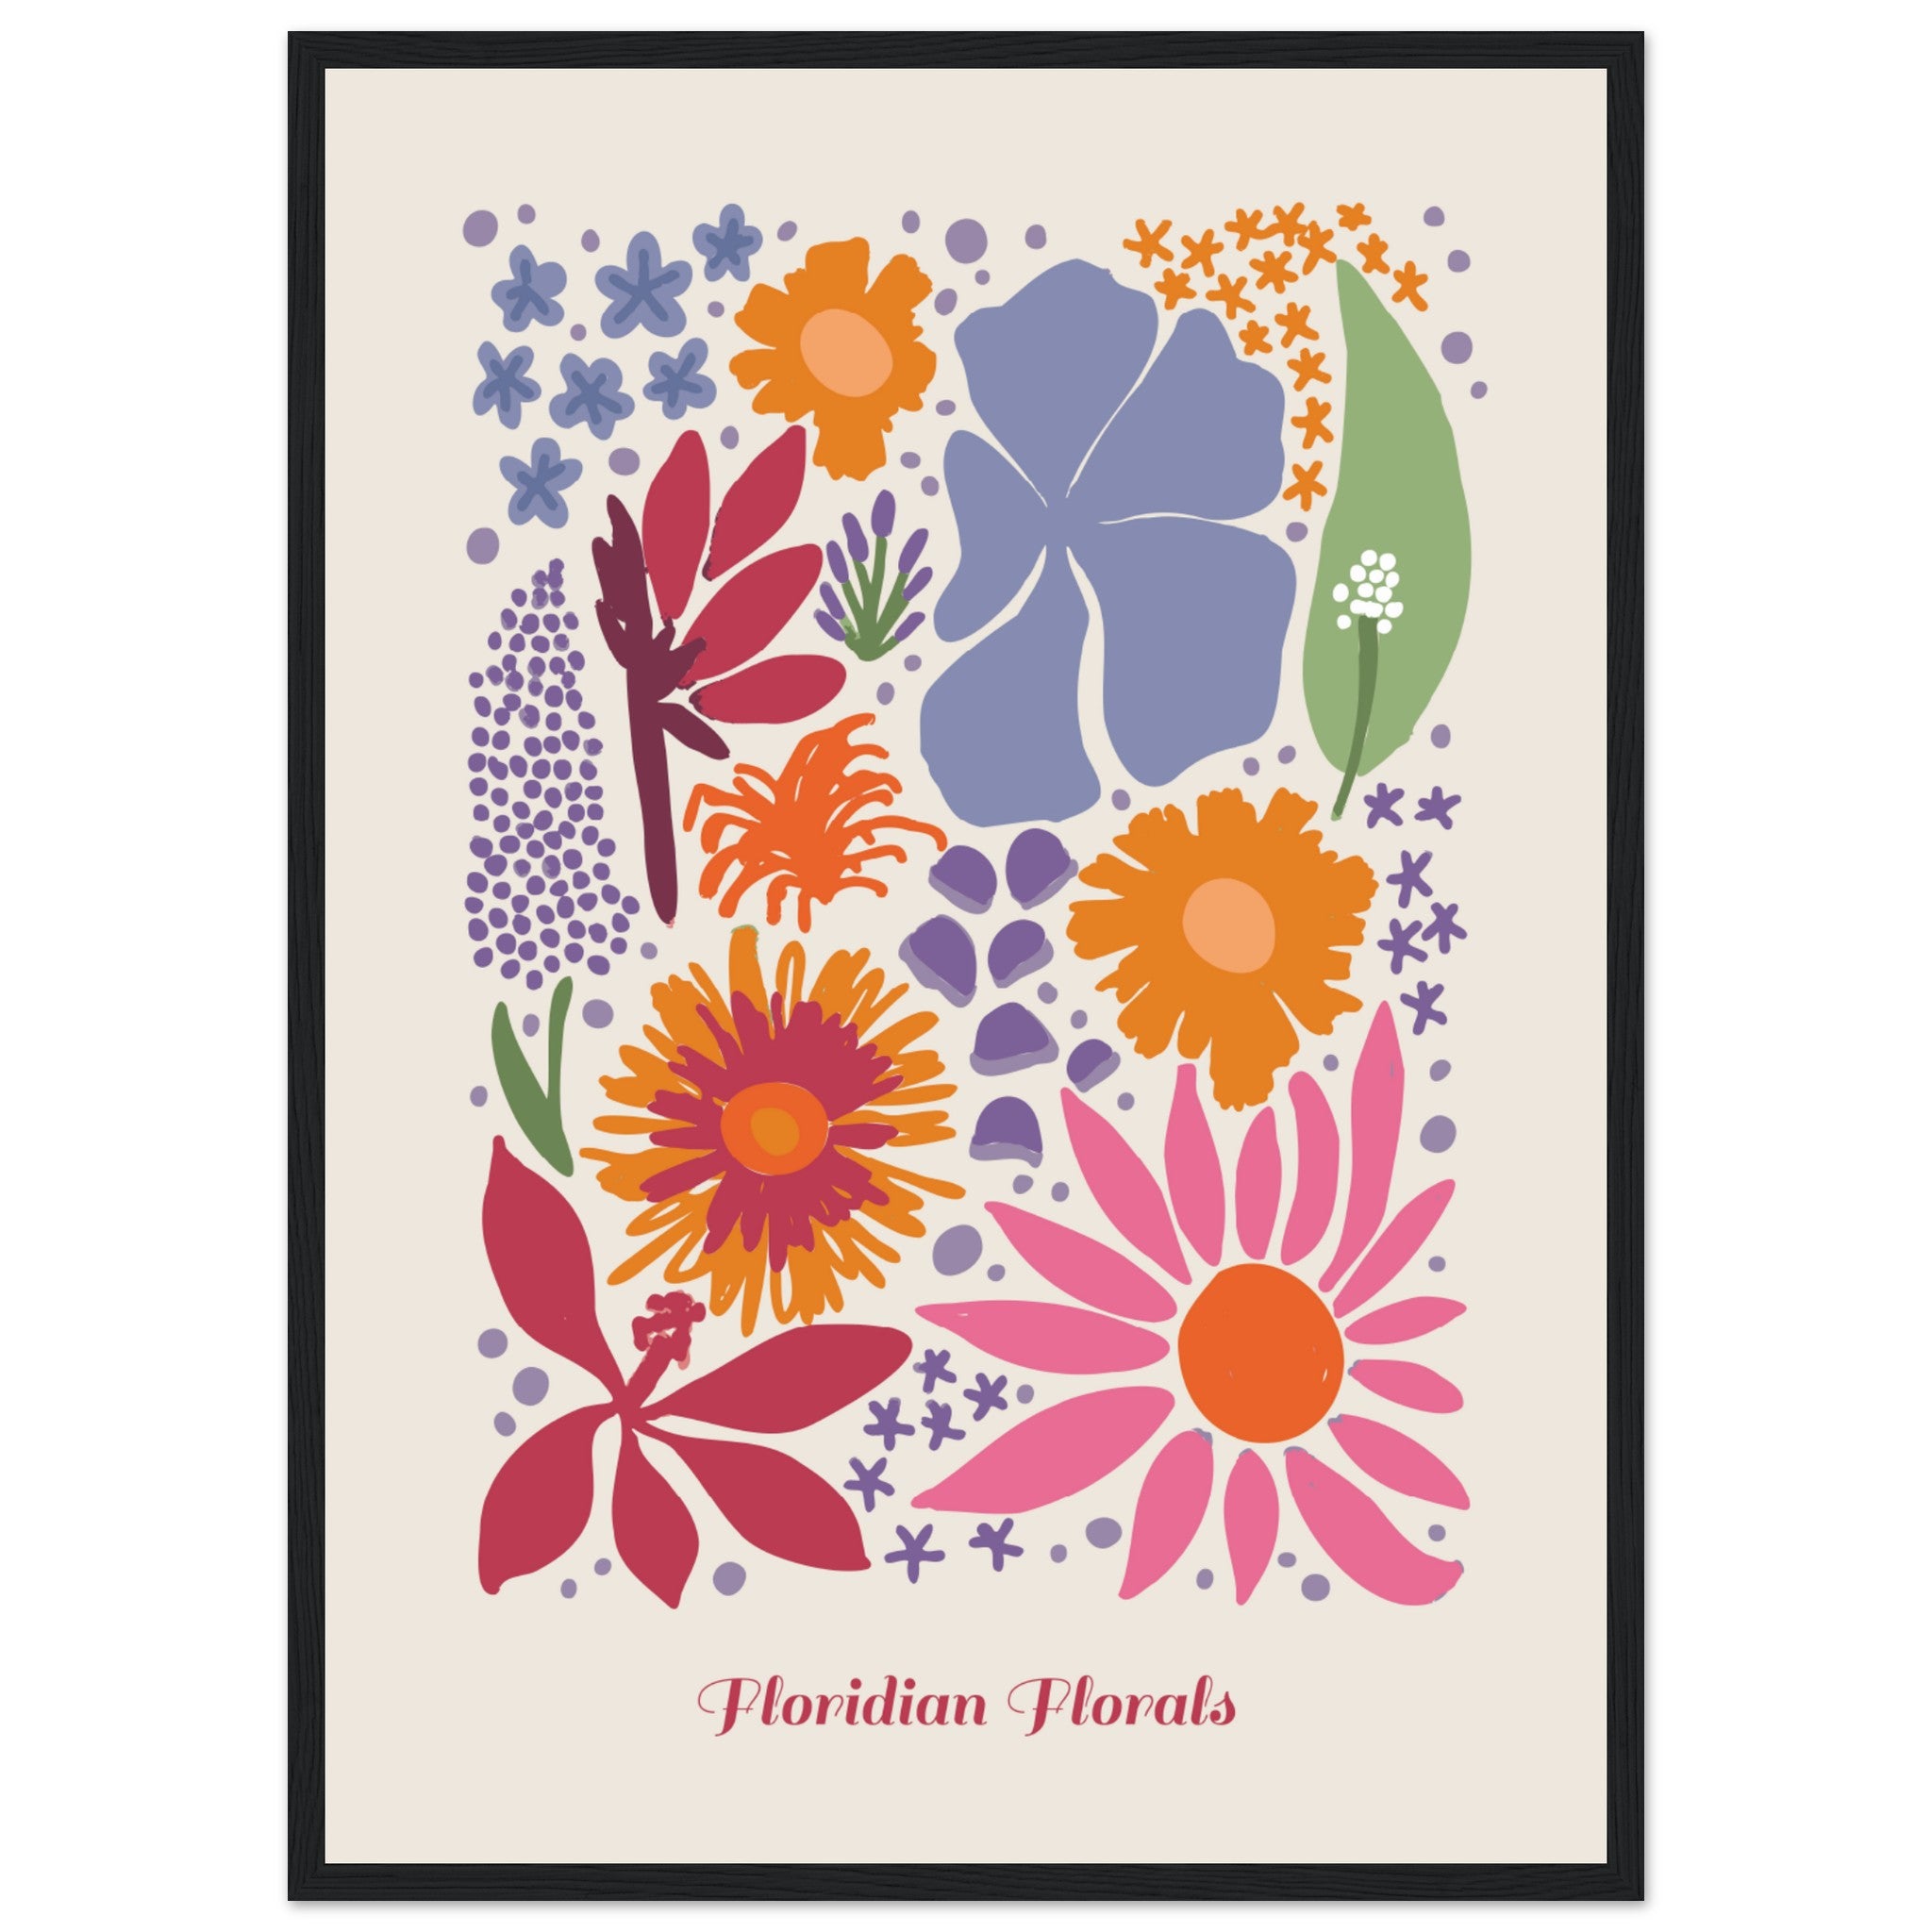 Floridan Florals Poster